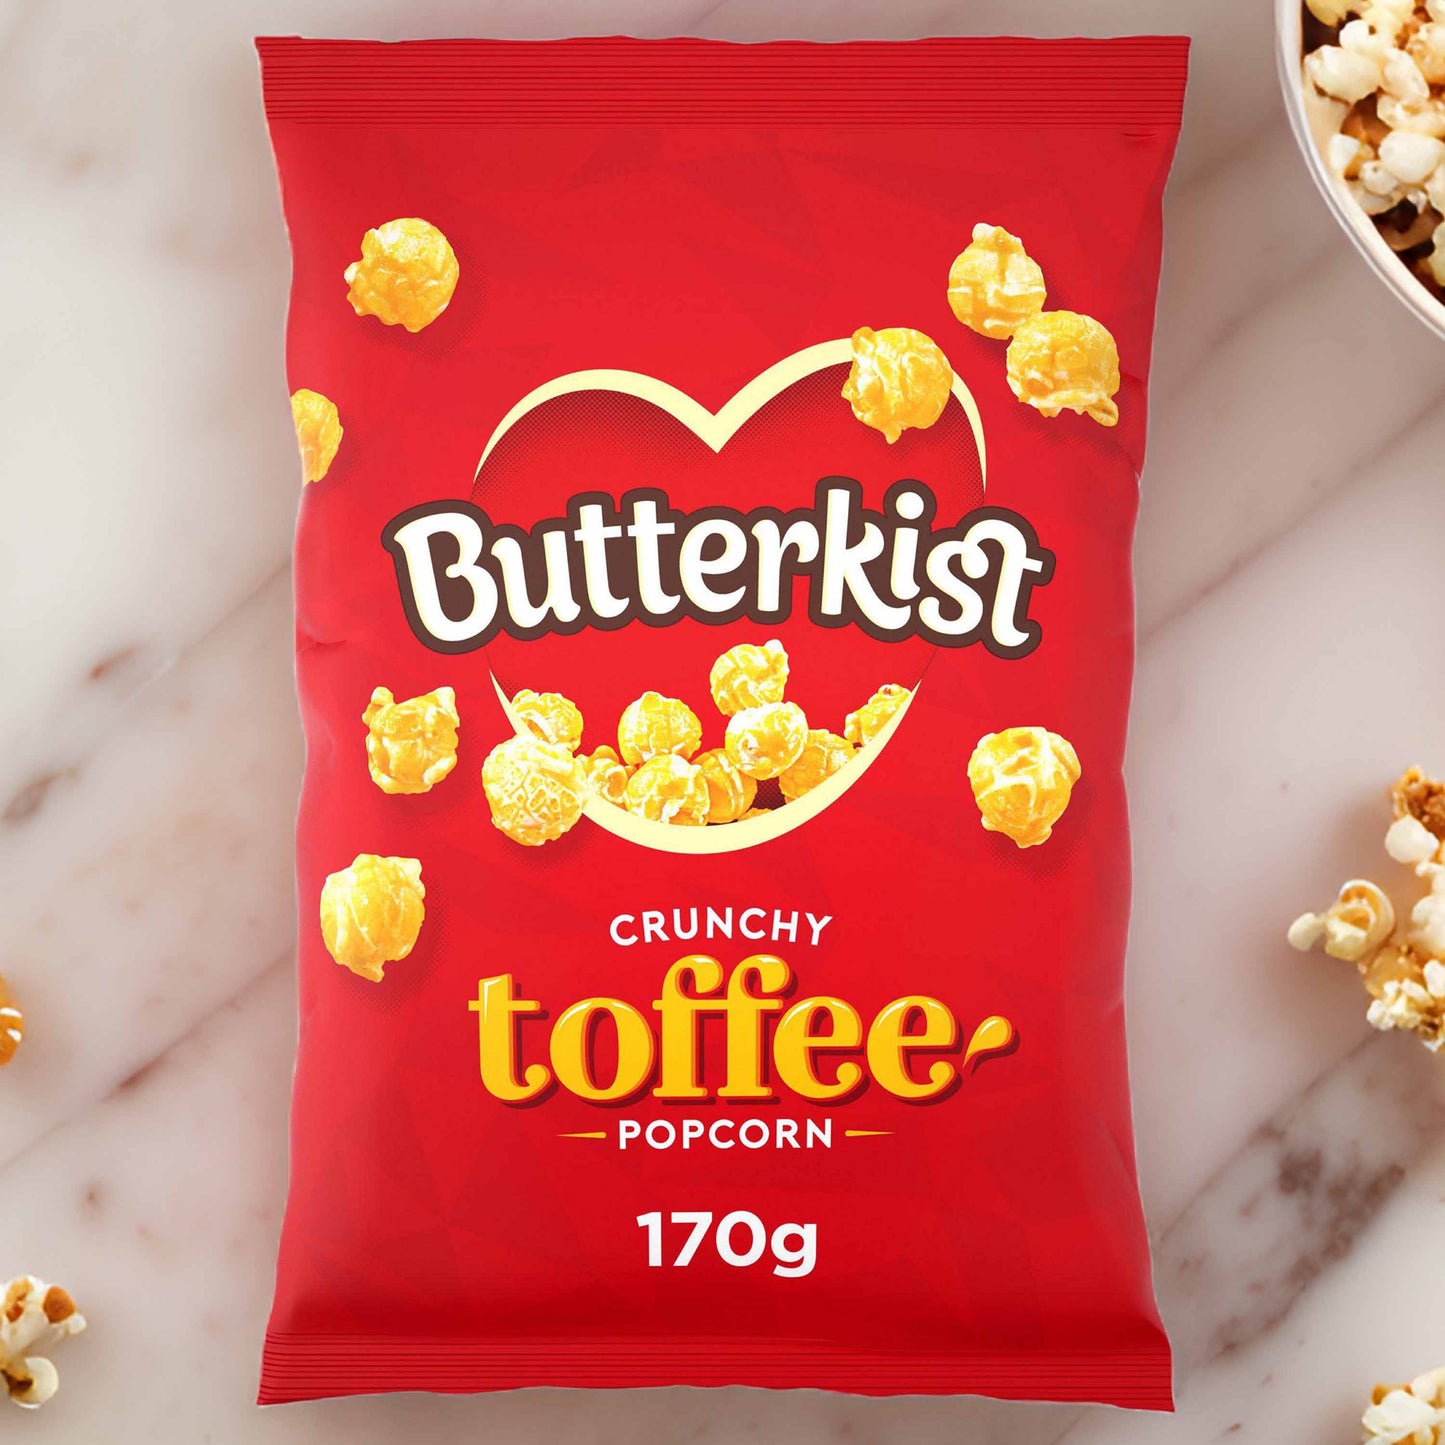 Butterkist Crunchy Toffee Popcorn - 170g - Classic British Popcorn